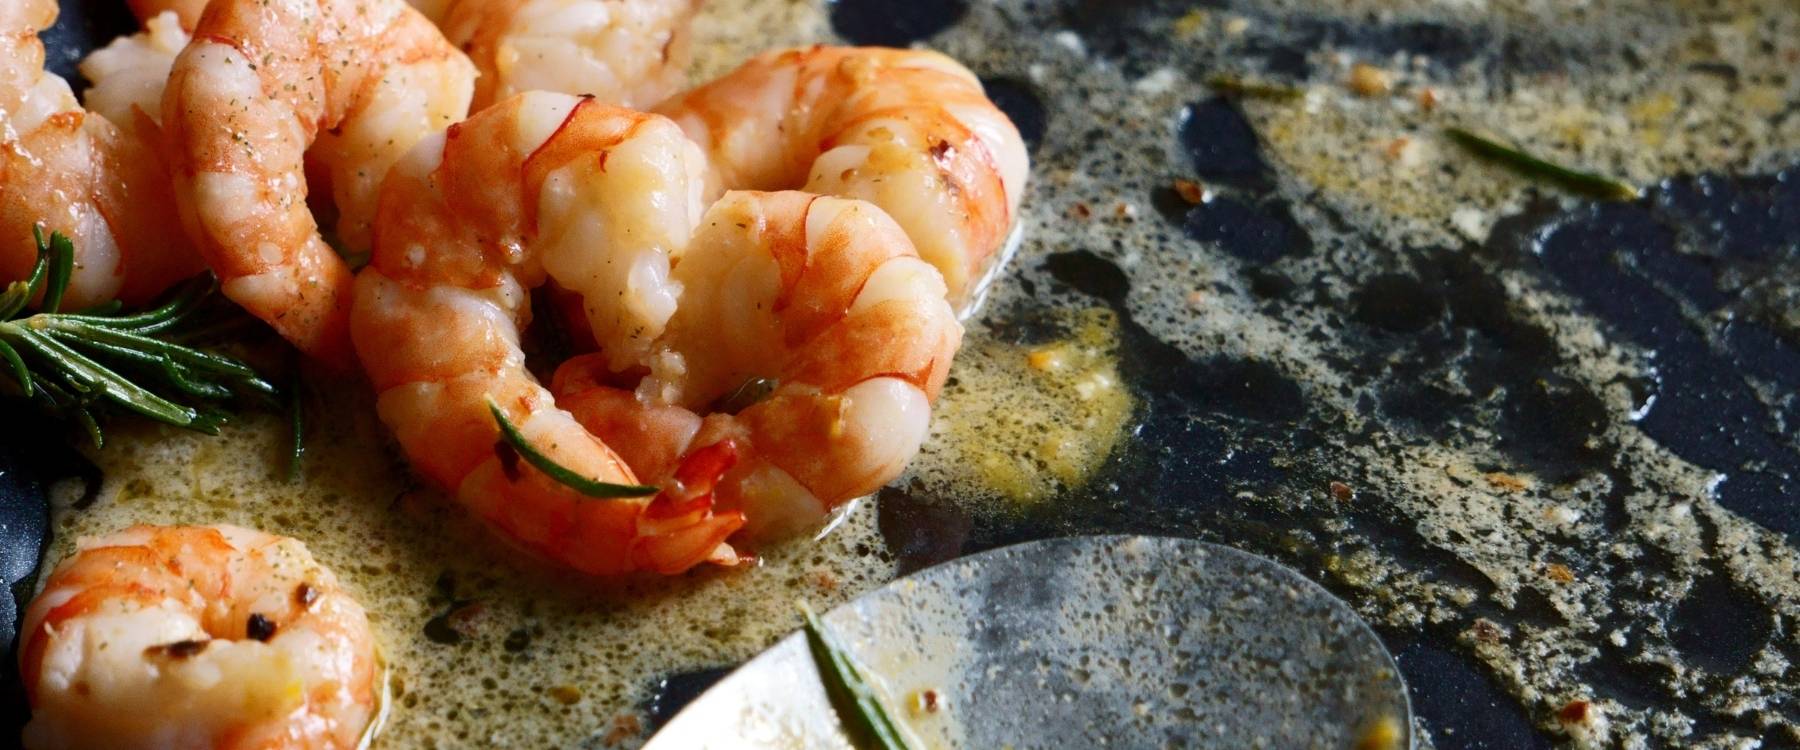 10 best restaurants in north myrtle beach